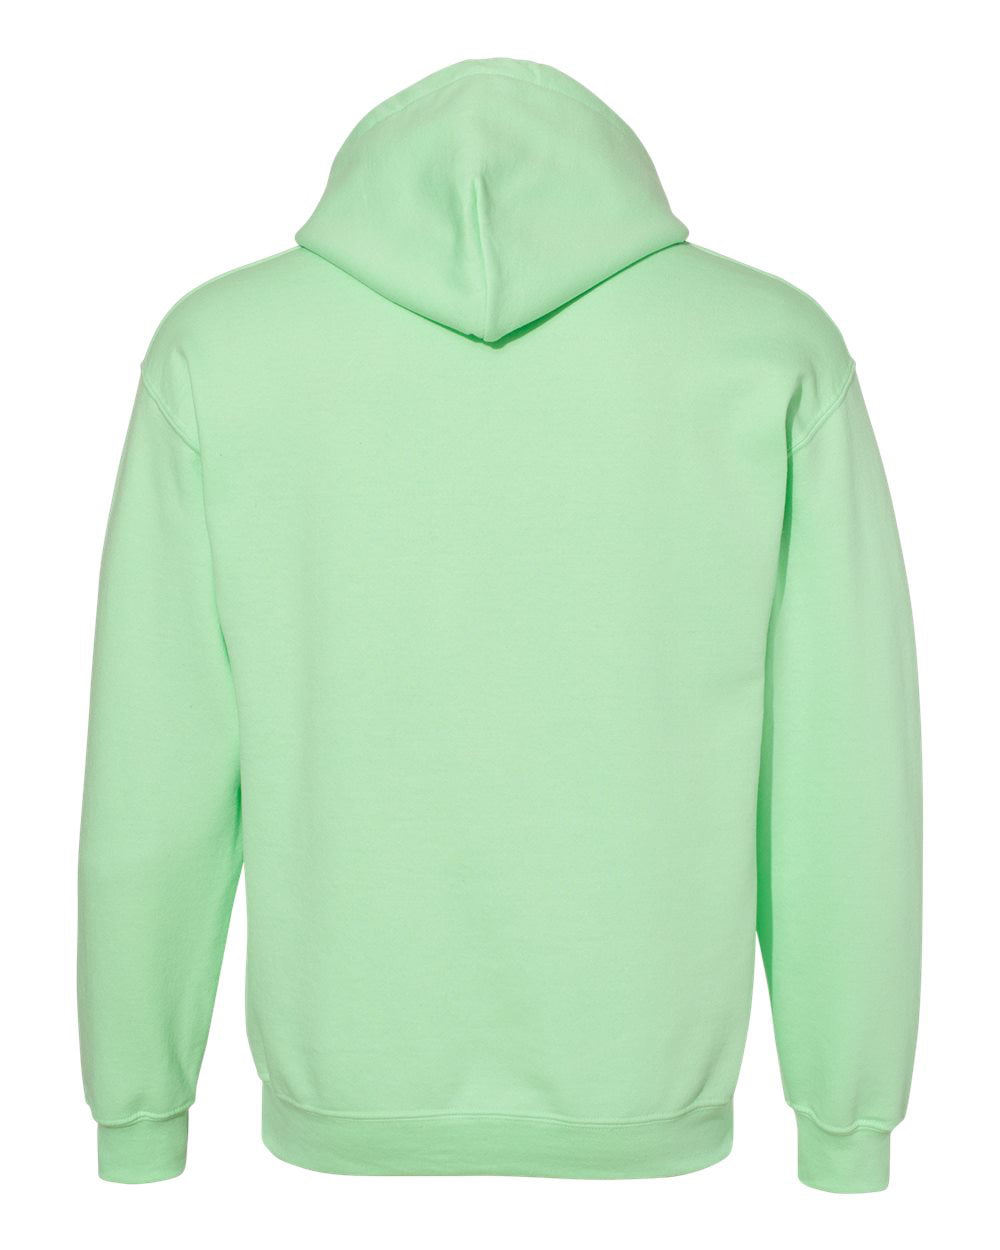 Plicht Beschikbaar knelpunt Men Multi Colors Hooded Sweatshirt Men Hoodies Color Mint Green Small Size  - Walmart.com